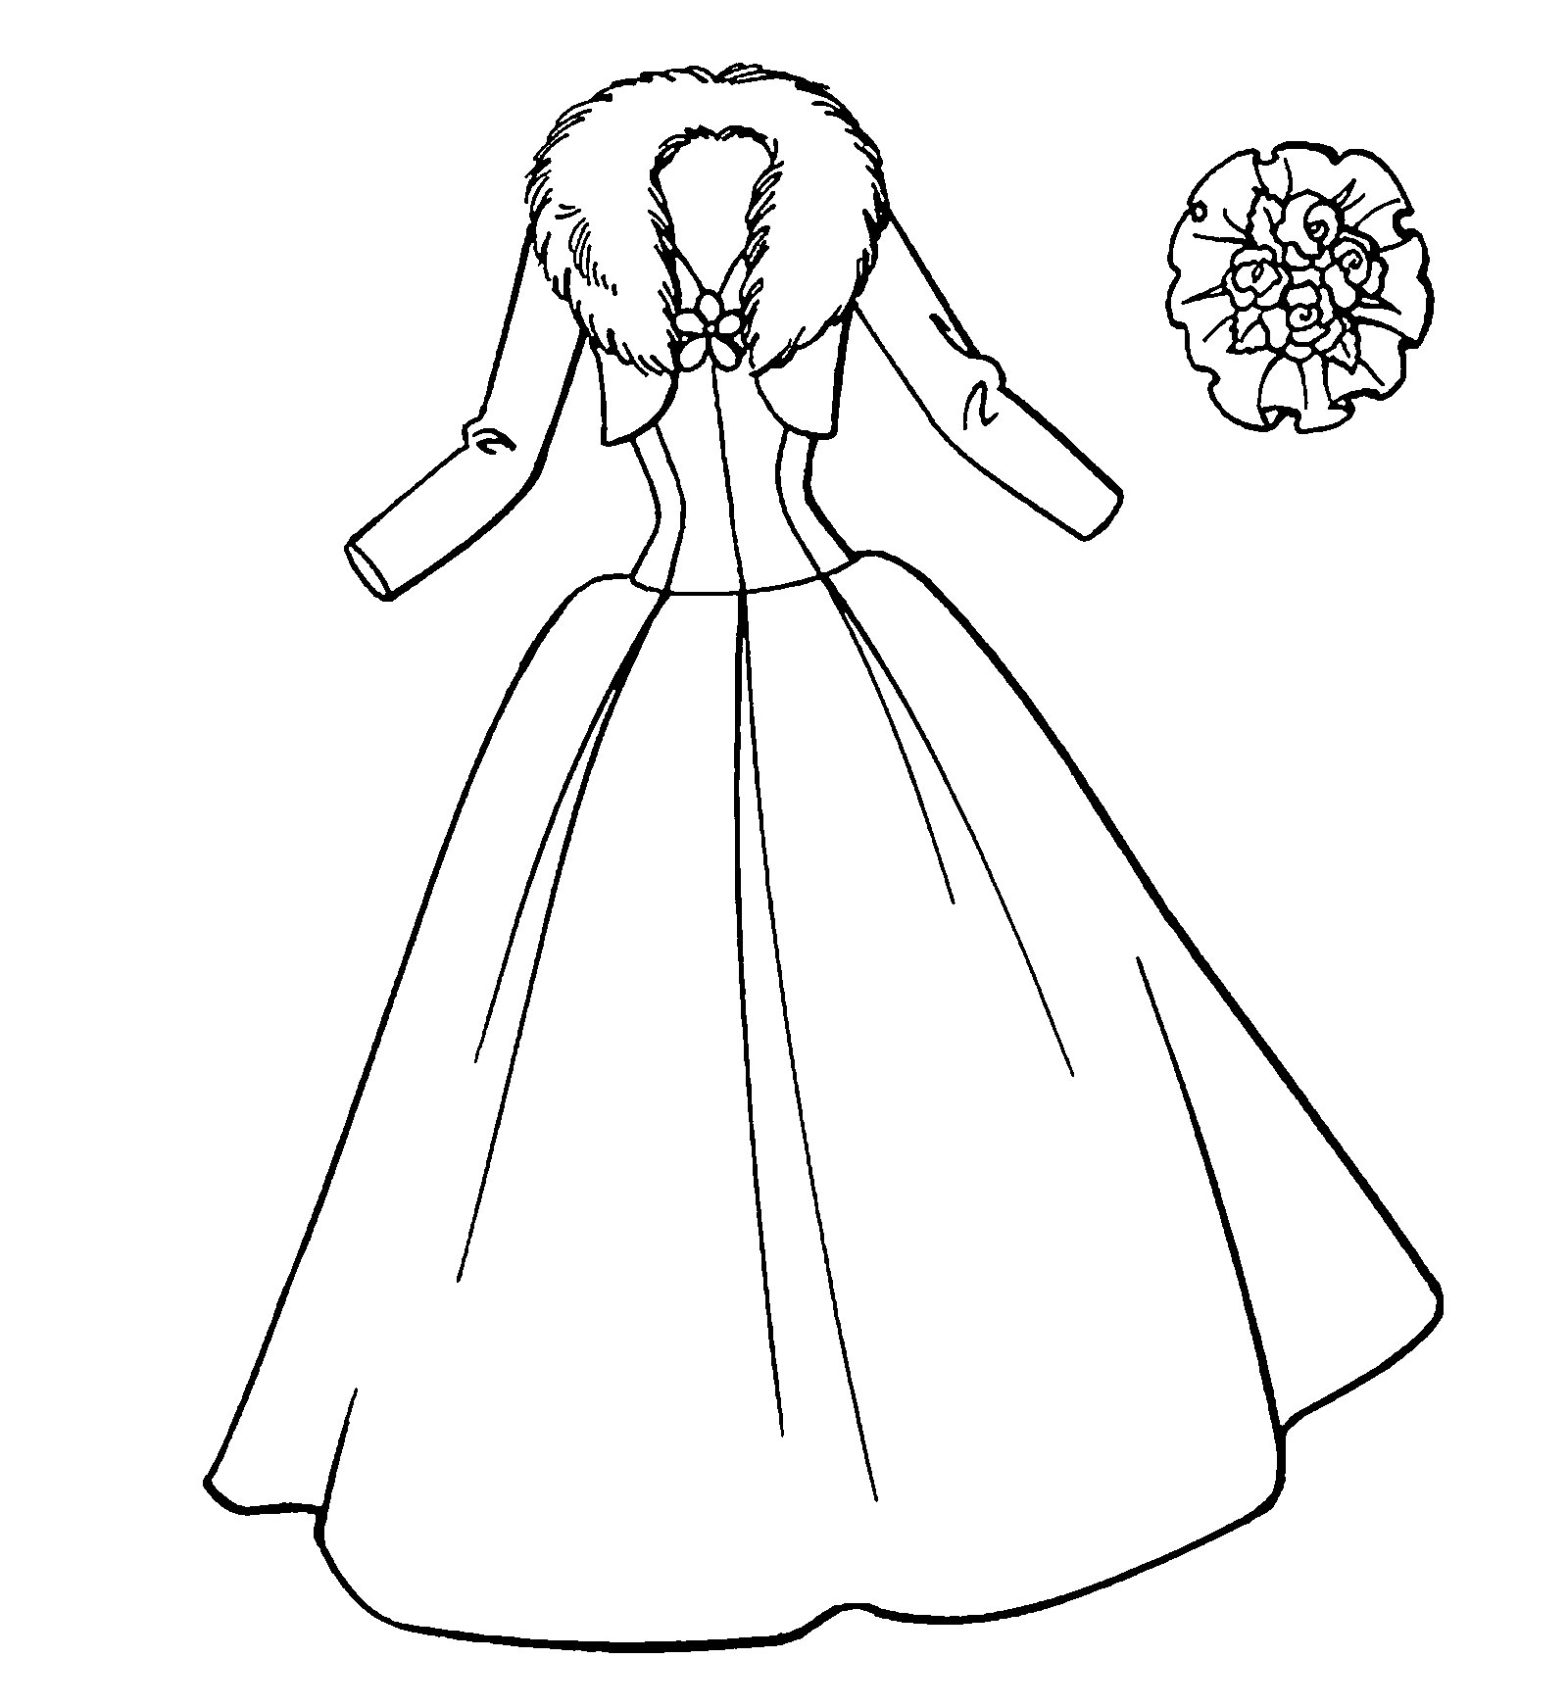 Раскрашенное изображение красивого платья для девочек (платья)